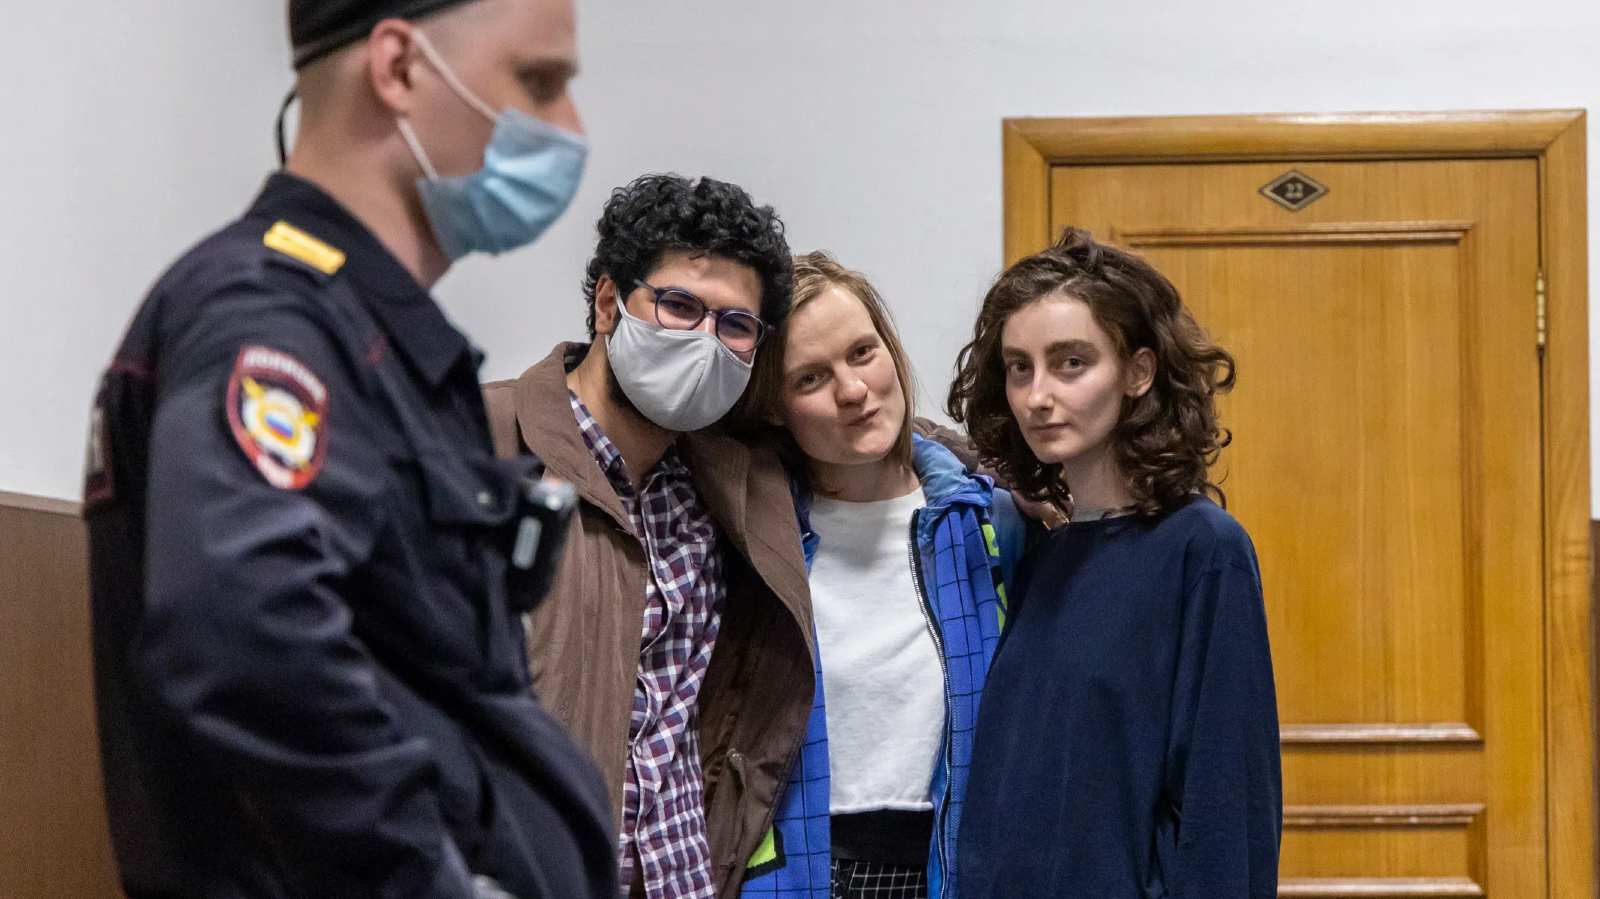 Photo: Armen Aramyan, Natalia Tyshkevich, and Alla Gutnikova in Bassmany Court. Credit: Arden Arkman/Novaya Gazeta